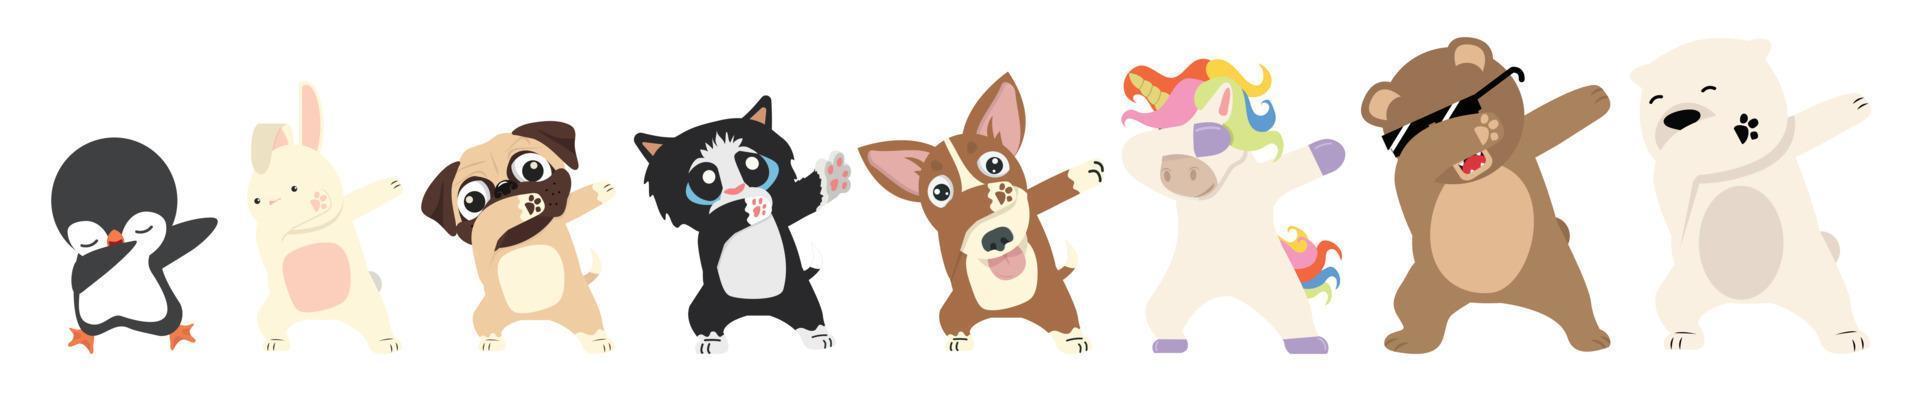 dabbing animales bailando signo conjunto de dibujos animados vector